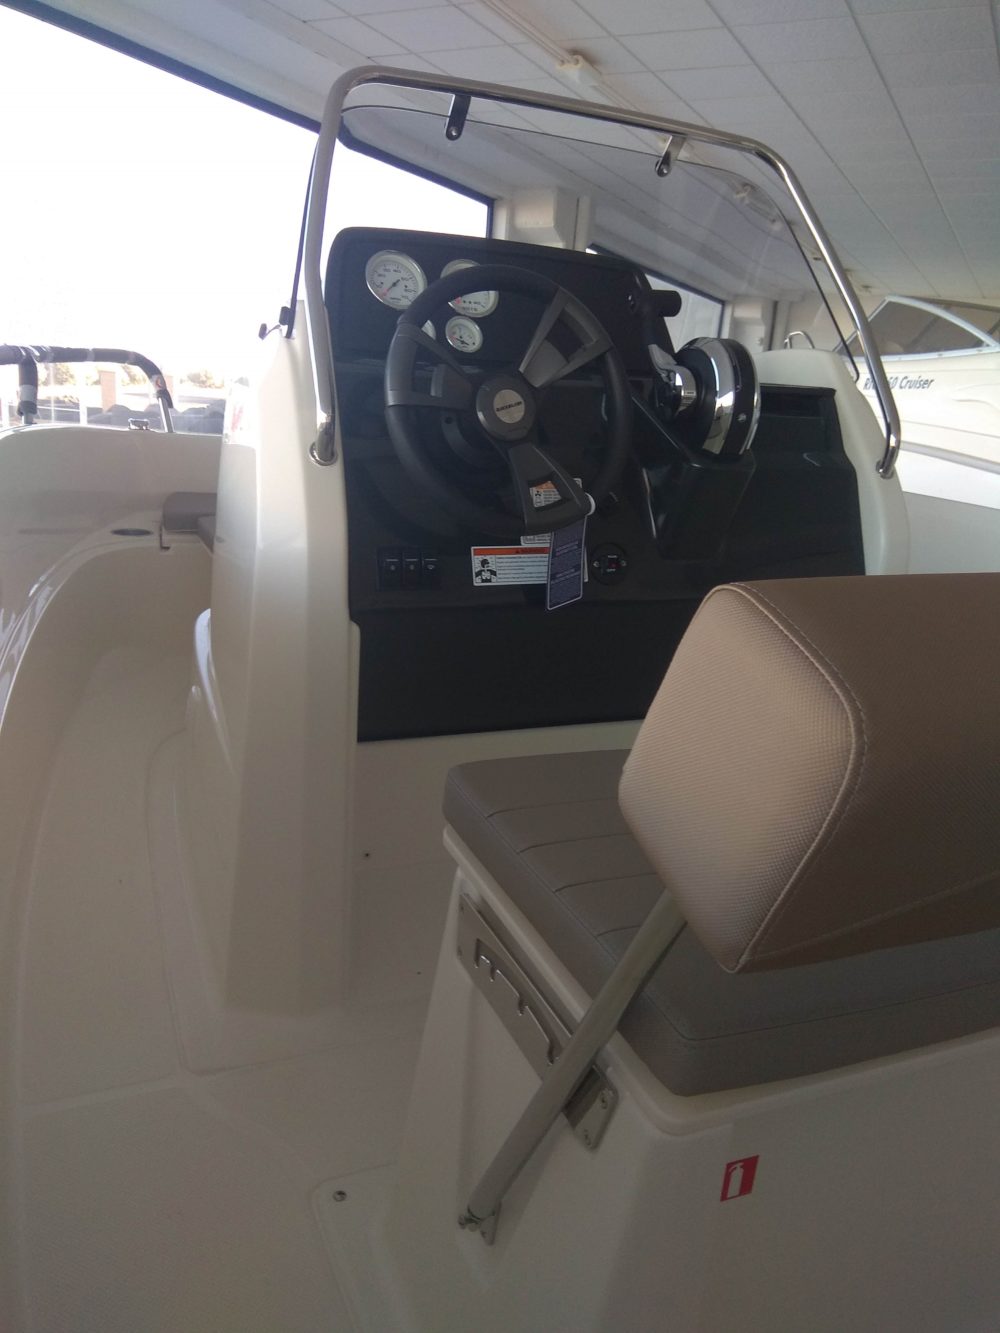 embarcacion quicksilver 505 activ motor fueraborda mercury oferta salon nautico barcelona cupon descuento